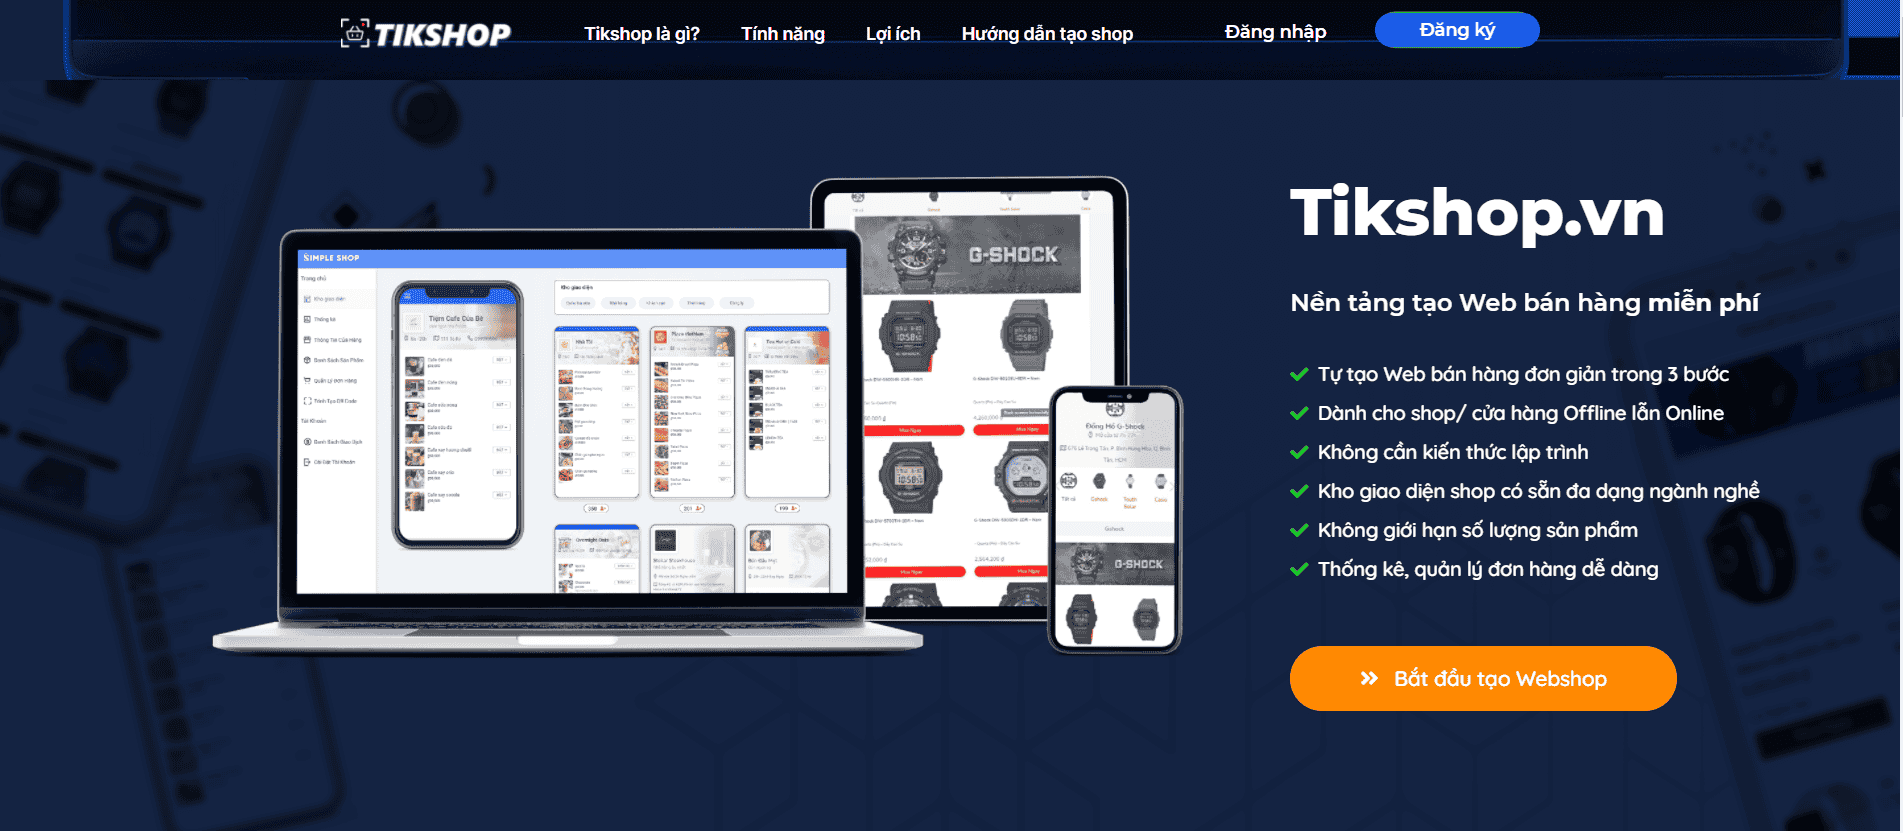 TikShop - Nền tảng tạo Web bán hàng miễn phí